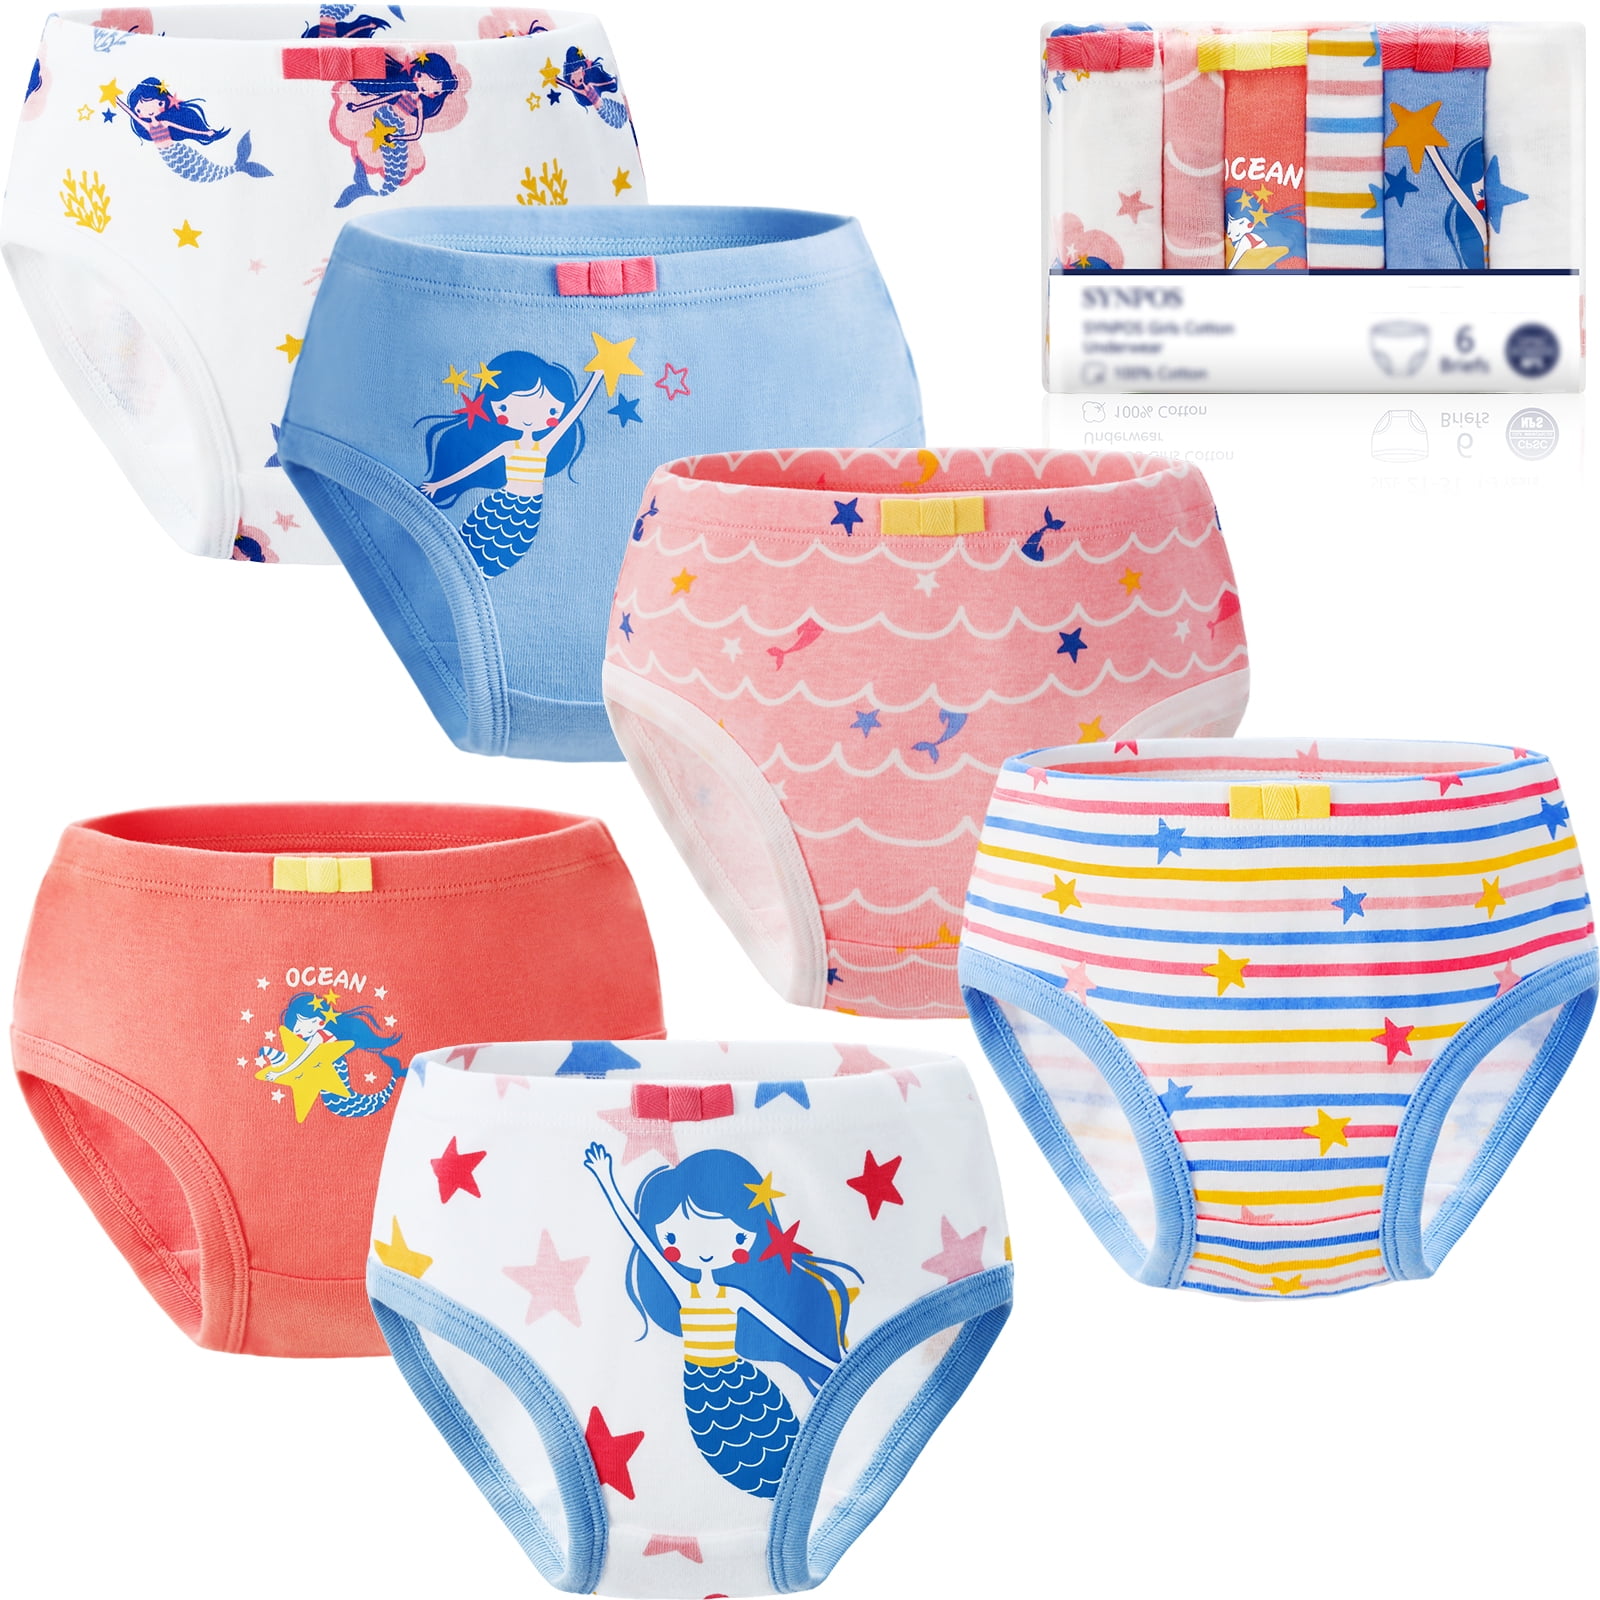 Wxllzlife Little Girls Soft 95% Cotton Underwear 4 Pack Toddler